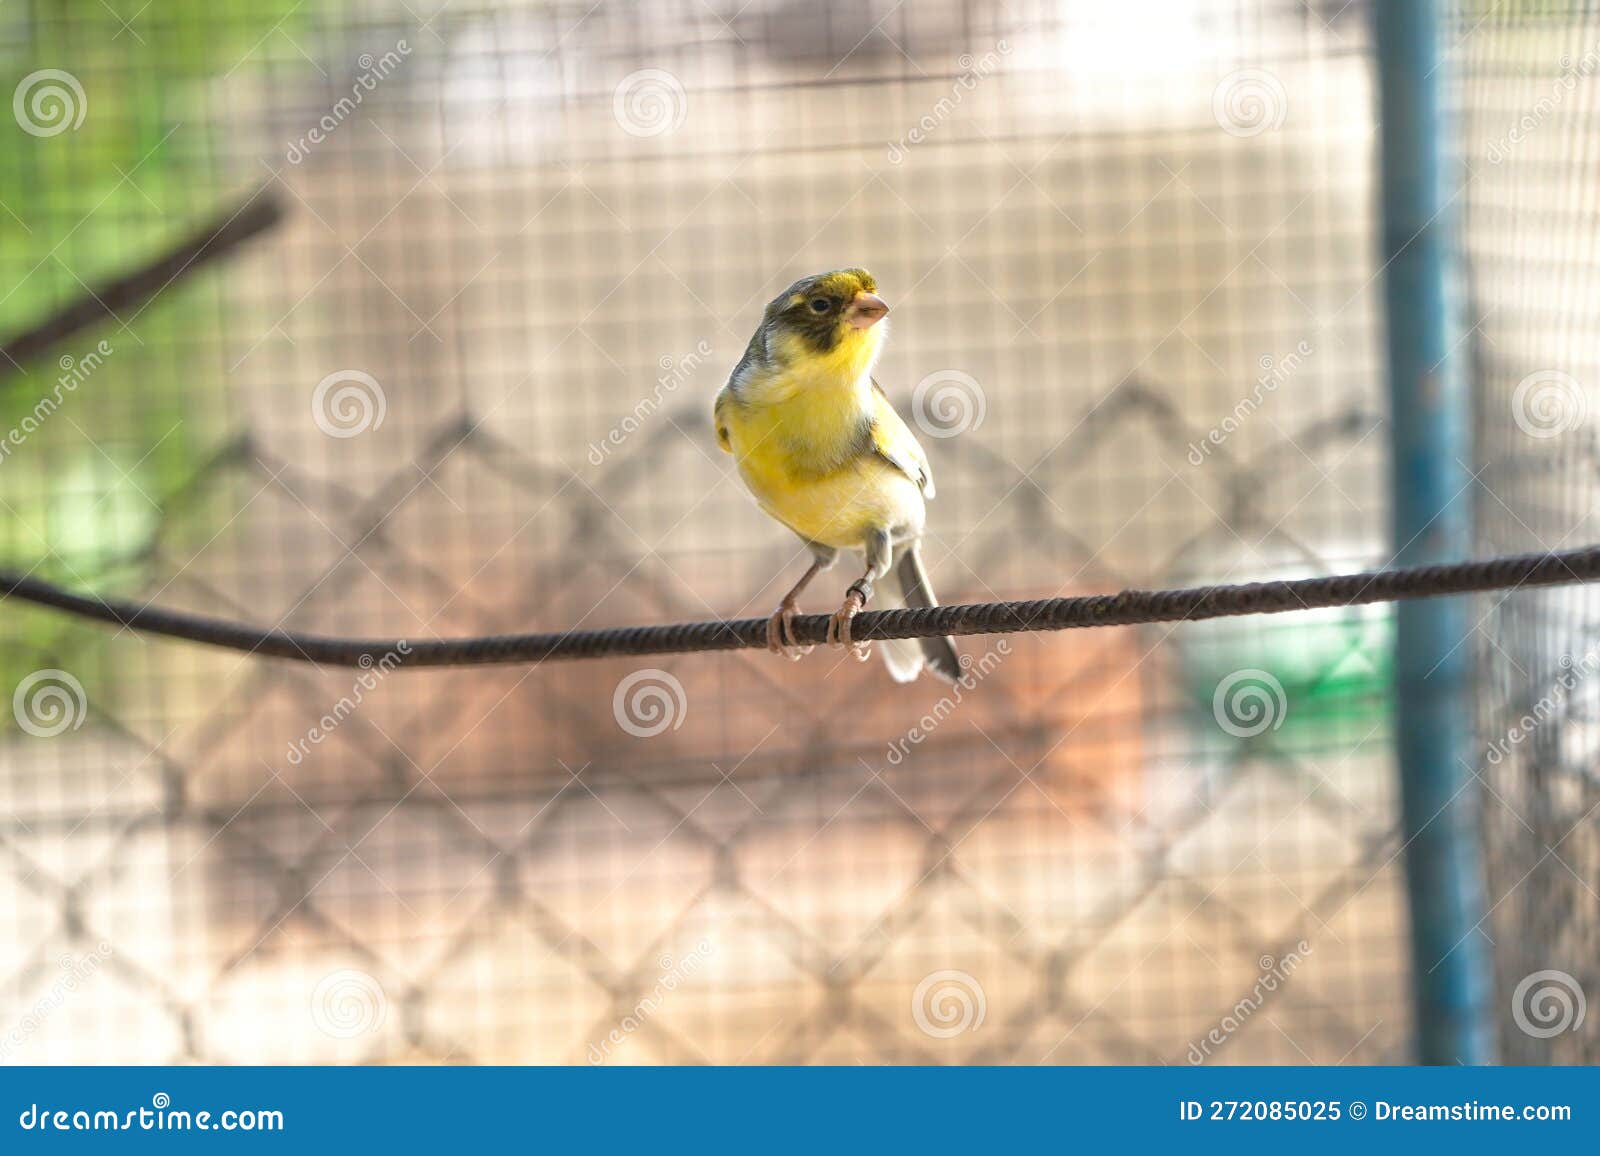 Oiseau canari dans une cage de fils d'acier perché sur un bâton de